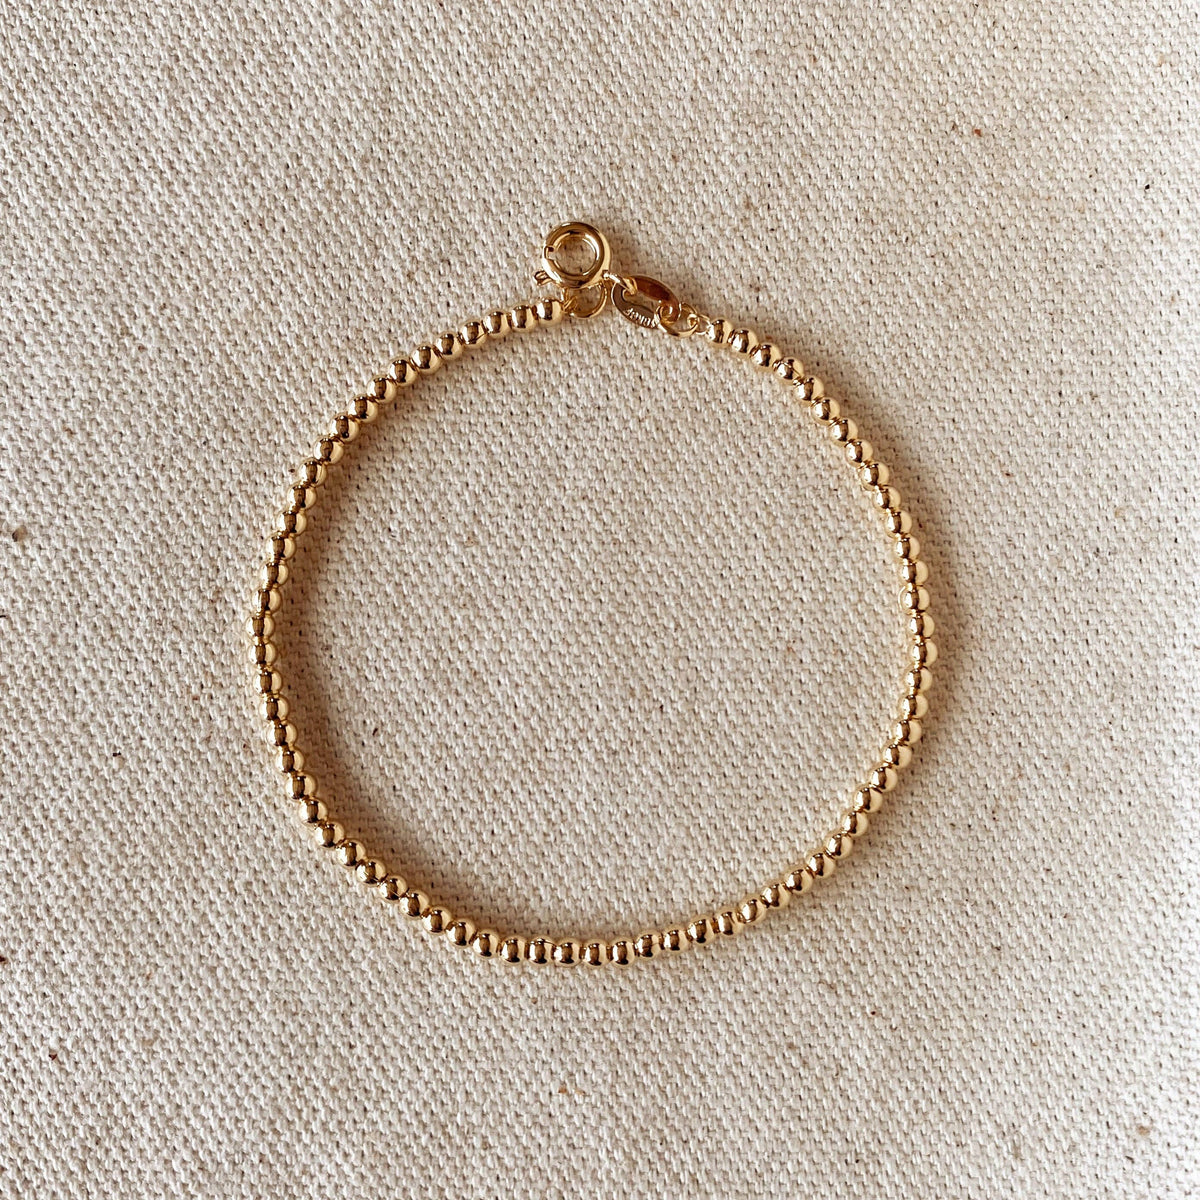 18k Gold Filled 2.5 mm Beaded Bracelet